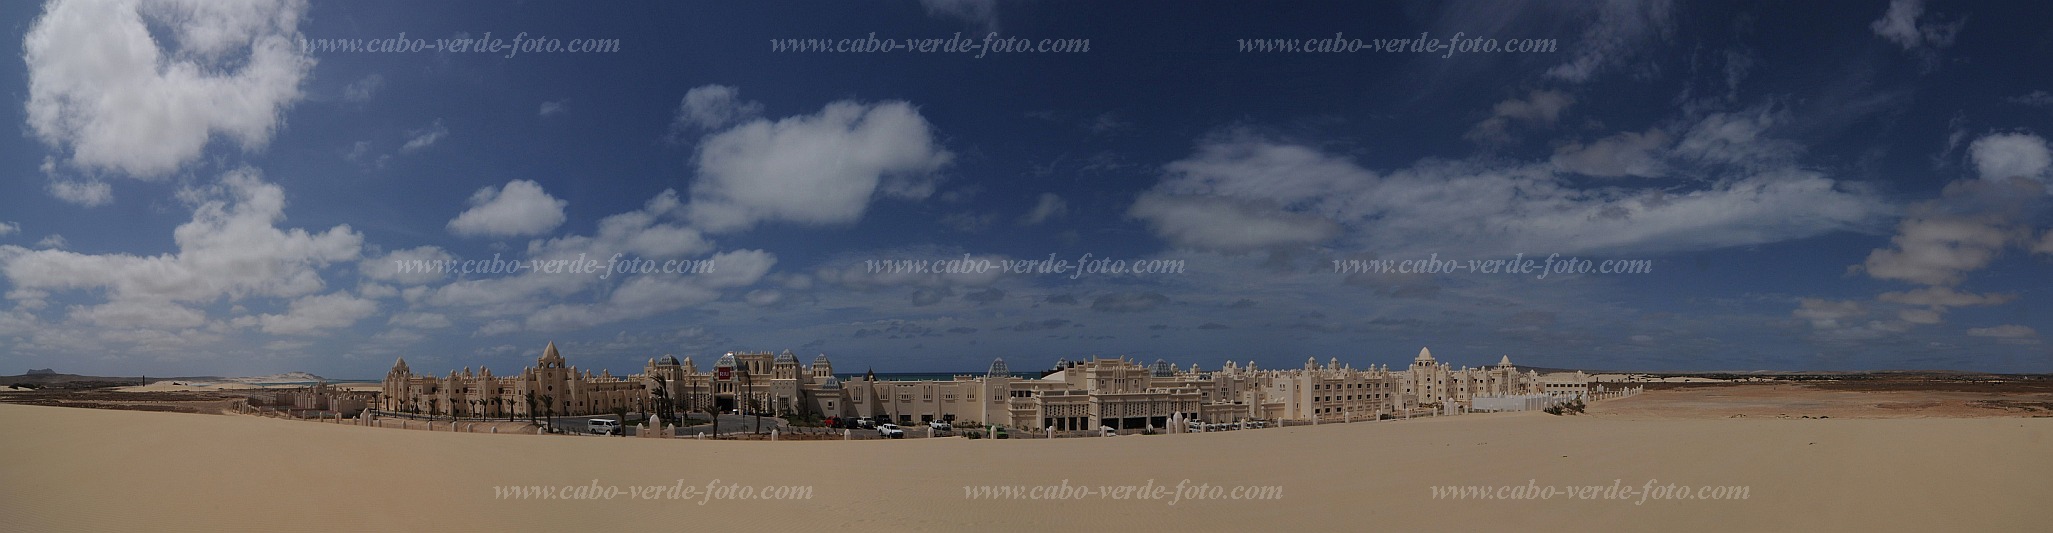 Boa Vista : Hotel RIU Karamboa : hotel facilities : Technology ArchitectureCabo Verde Foto Gallery